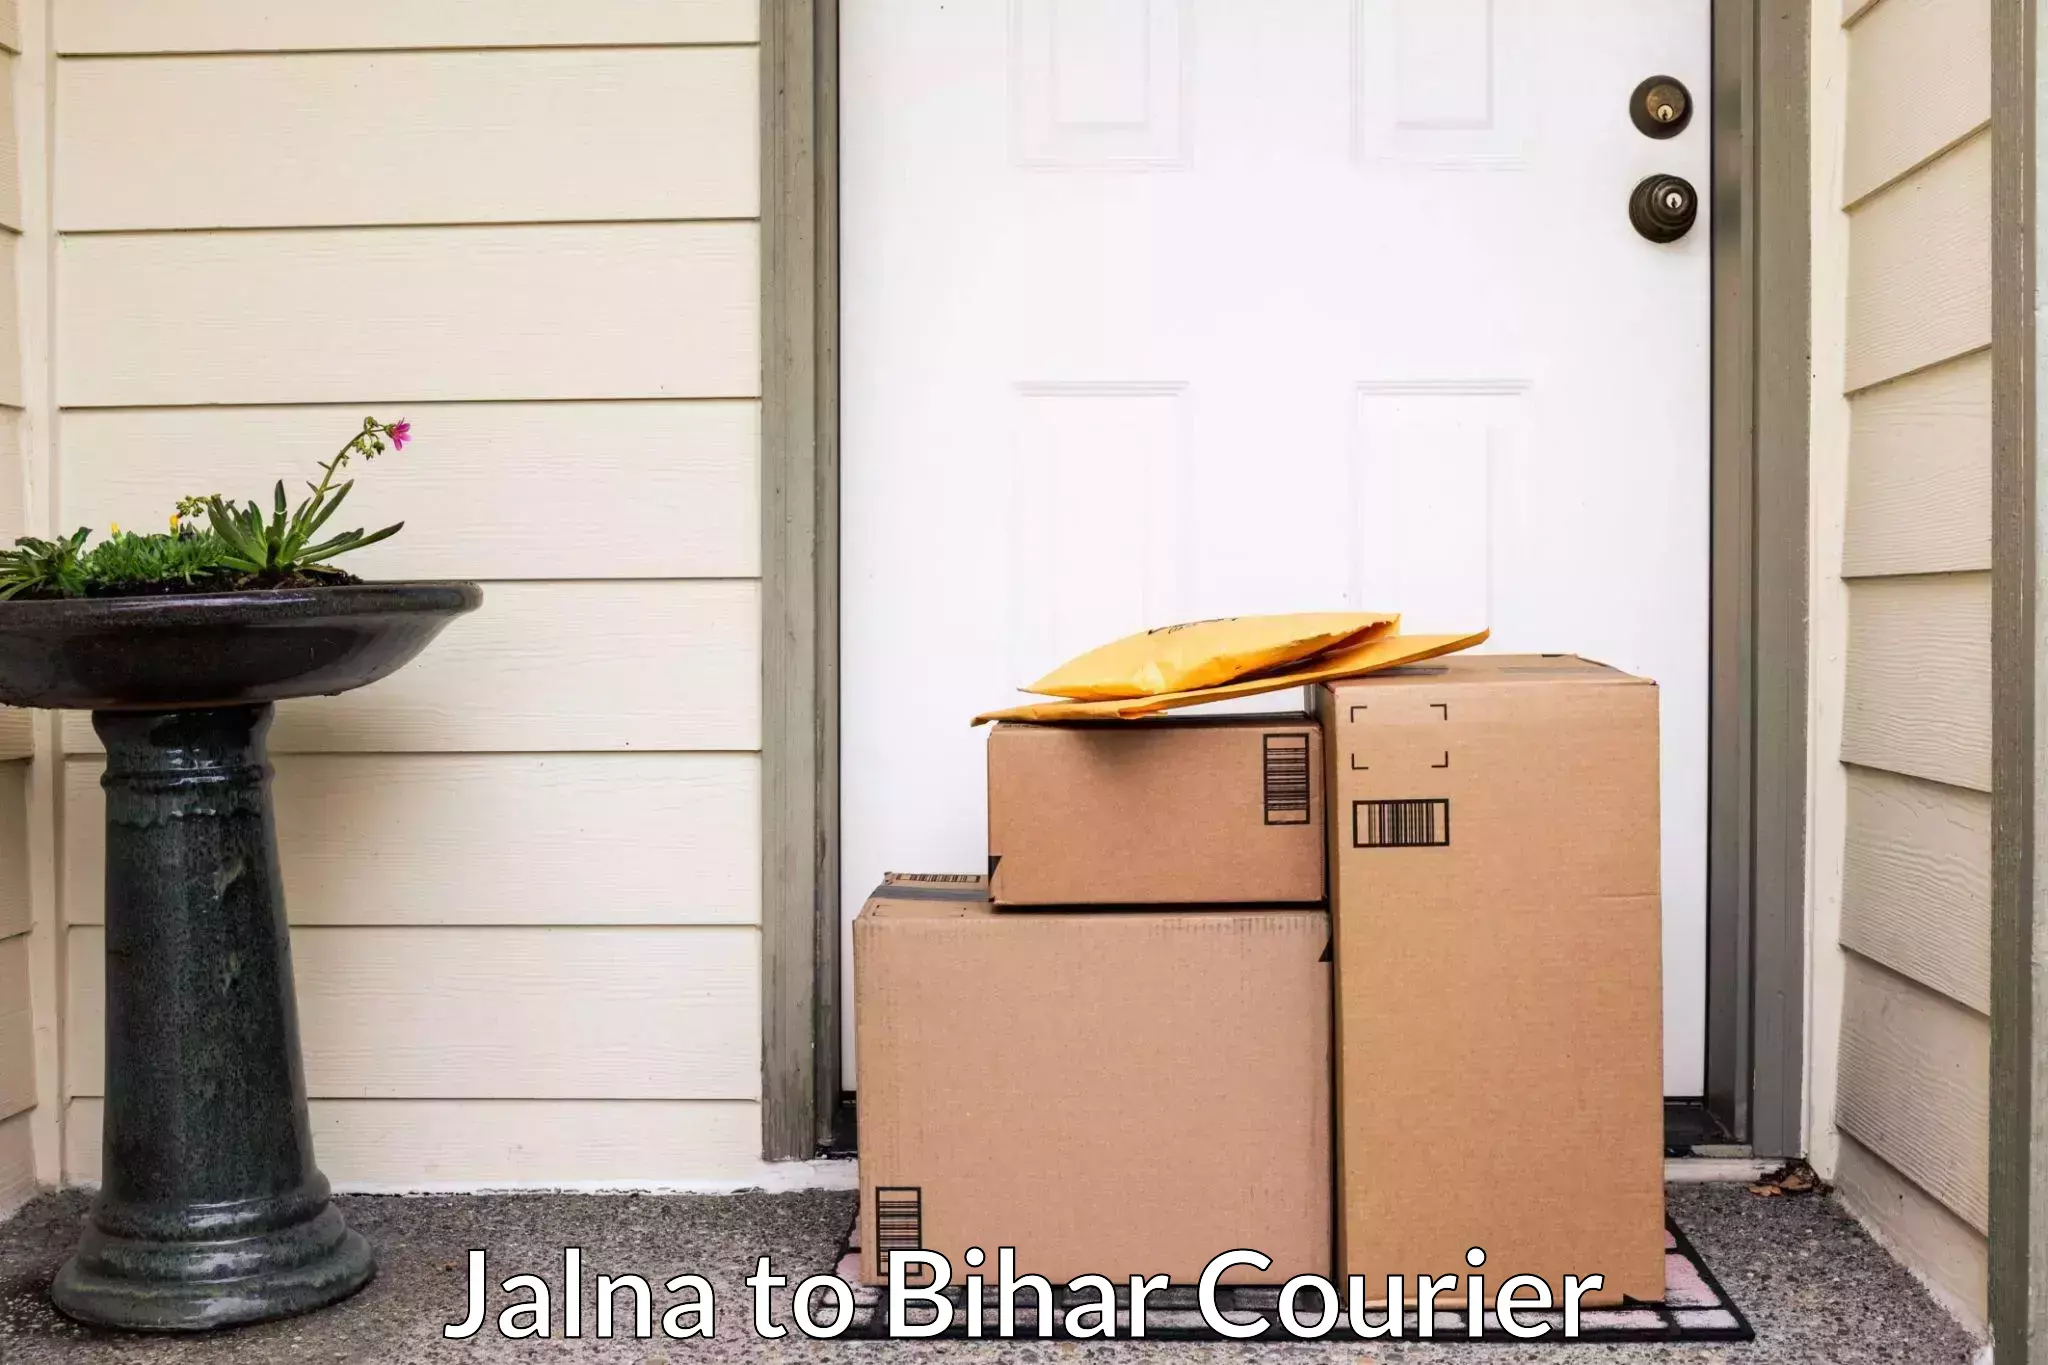 Skilled furniture transporters Jalna to Bihar